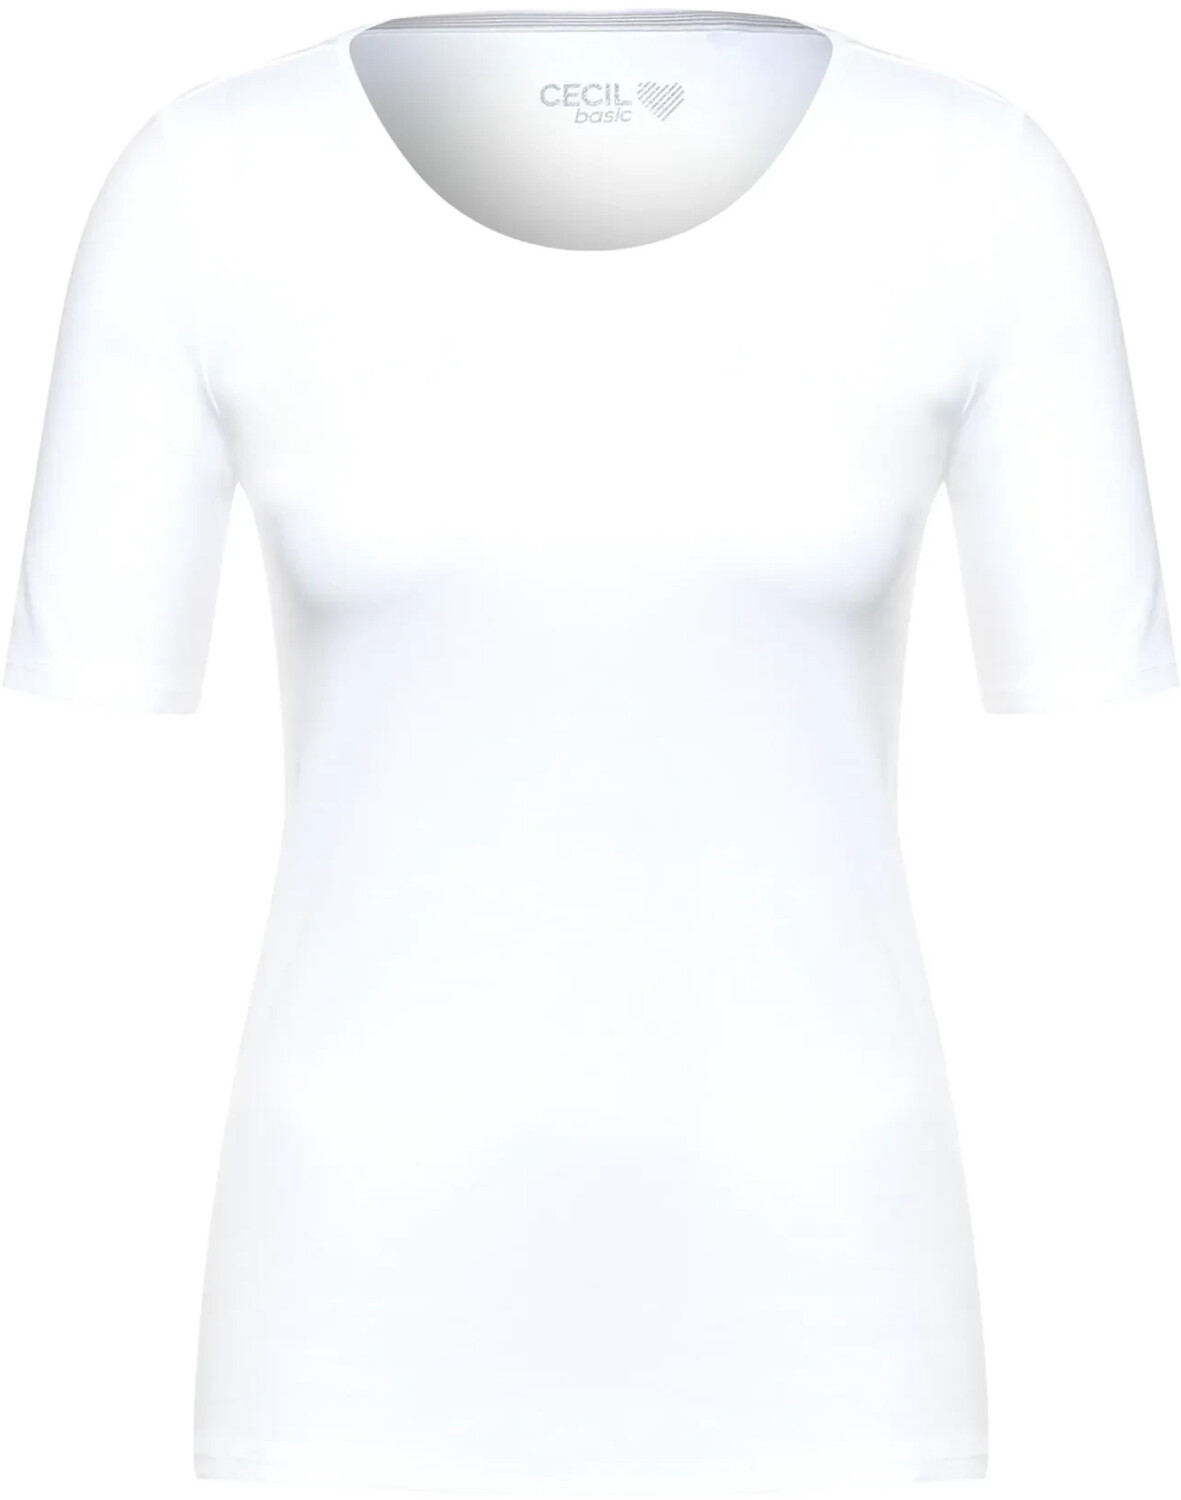 Lena | T-Shirt 13,20 Preisvergleich white ab € Cecil Basic bei